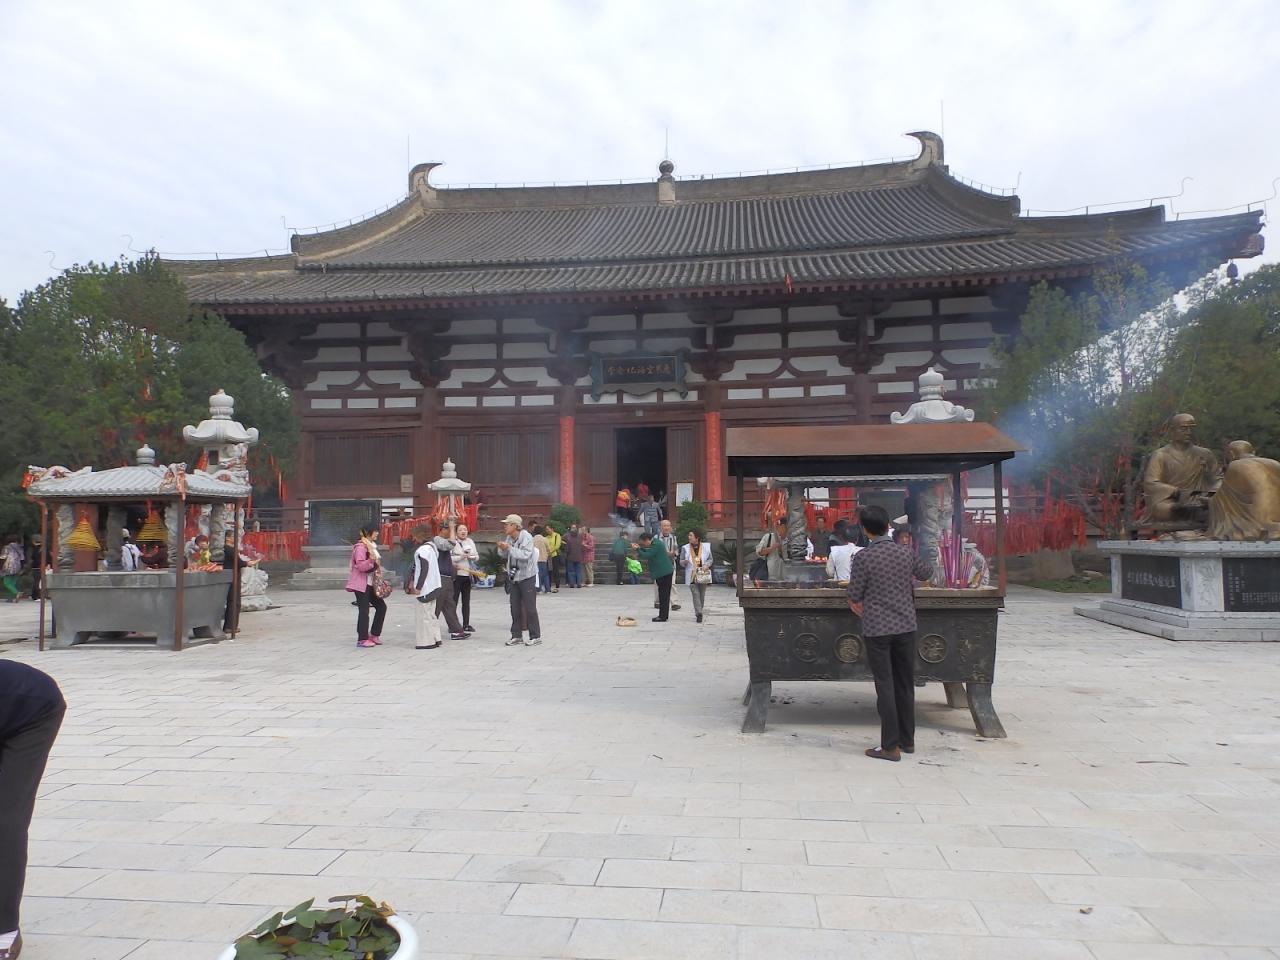 第0番札所 1200年記念の年に巡る 中国青龍寺へ誘う 巡礼の旅 ４日間 